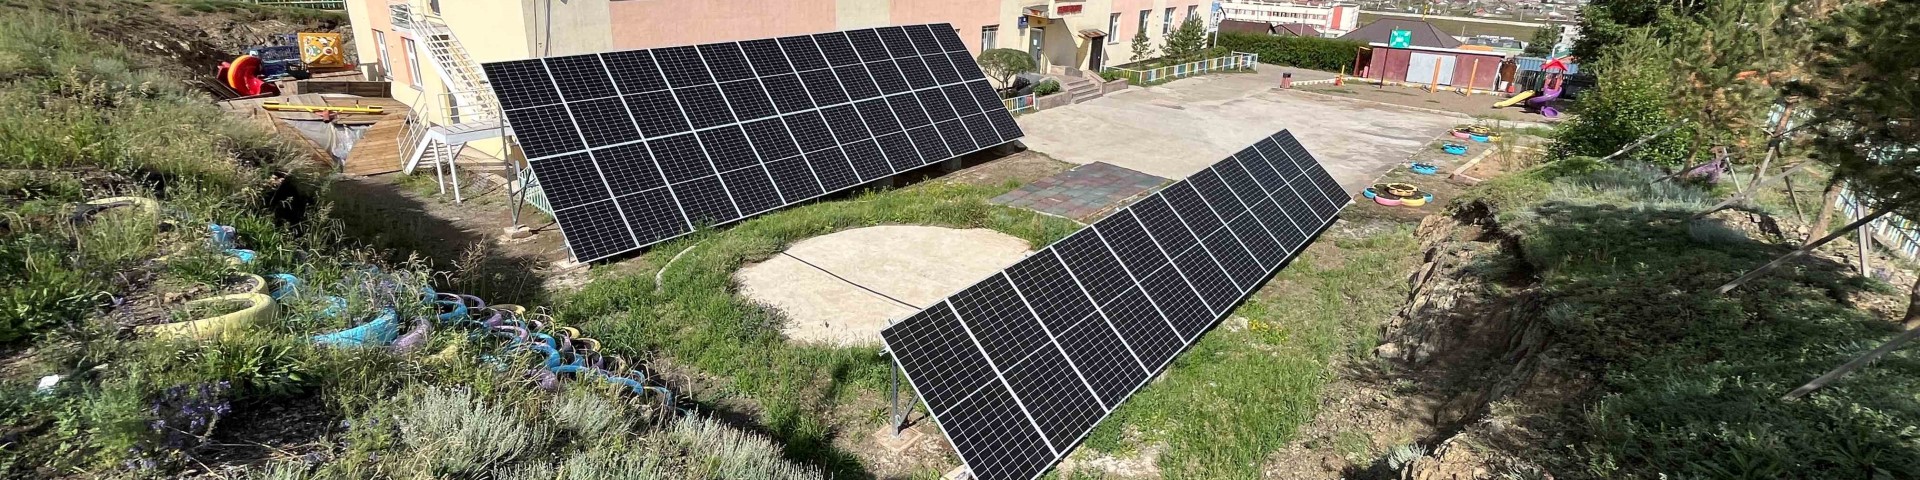 Auf der Grünfläche vor einem Wohnhaus stehen zwei PV-Solarpaneele.